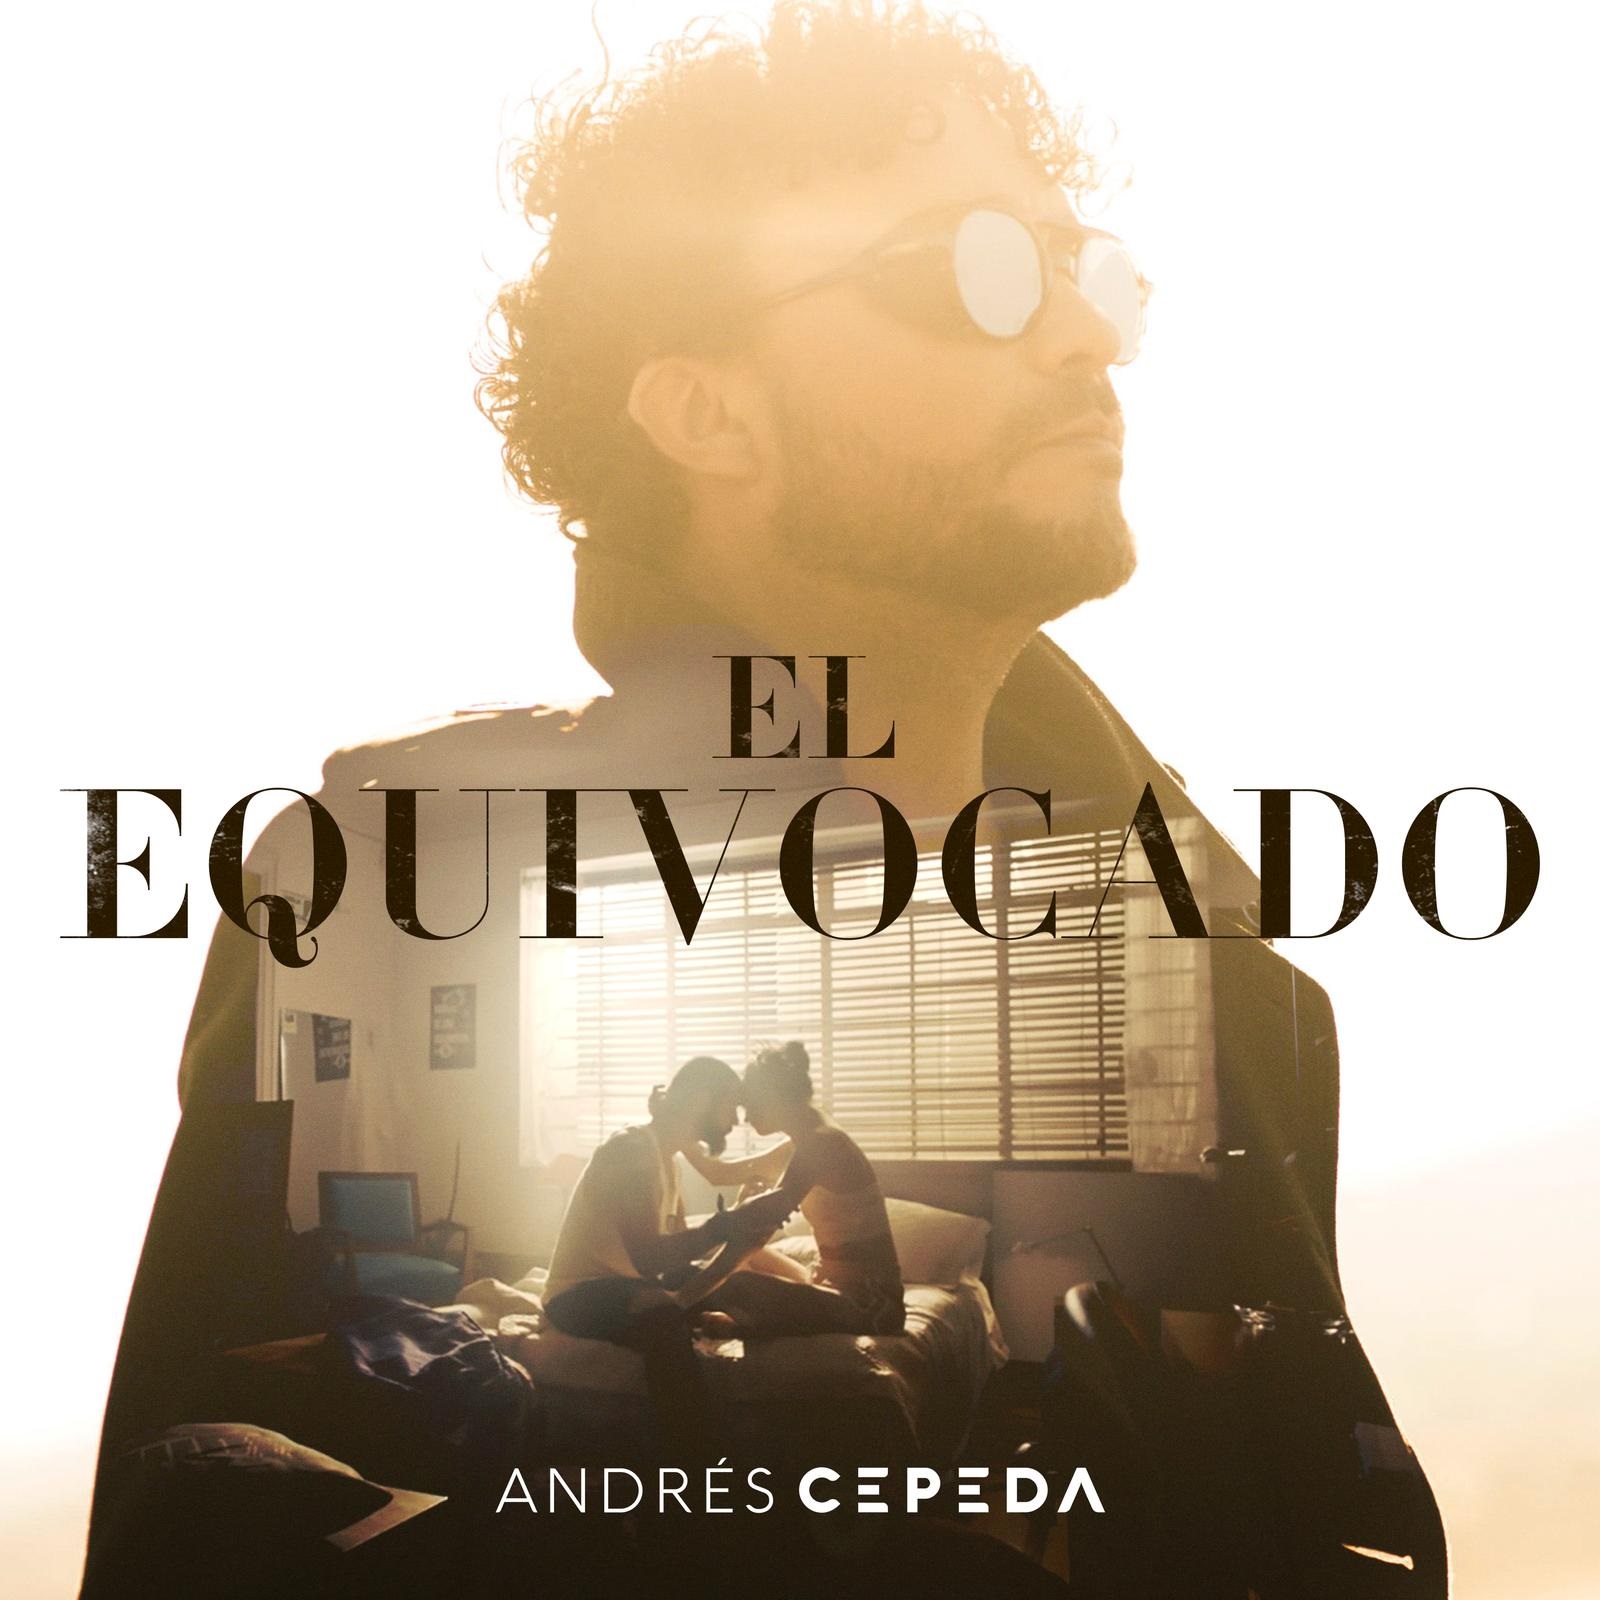 Andrés Cepeda con nuevo material discográfico